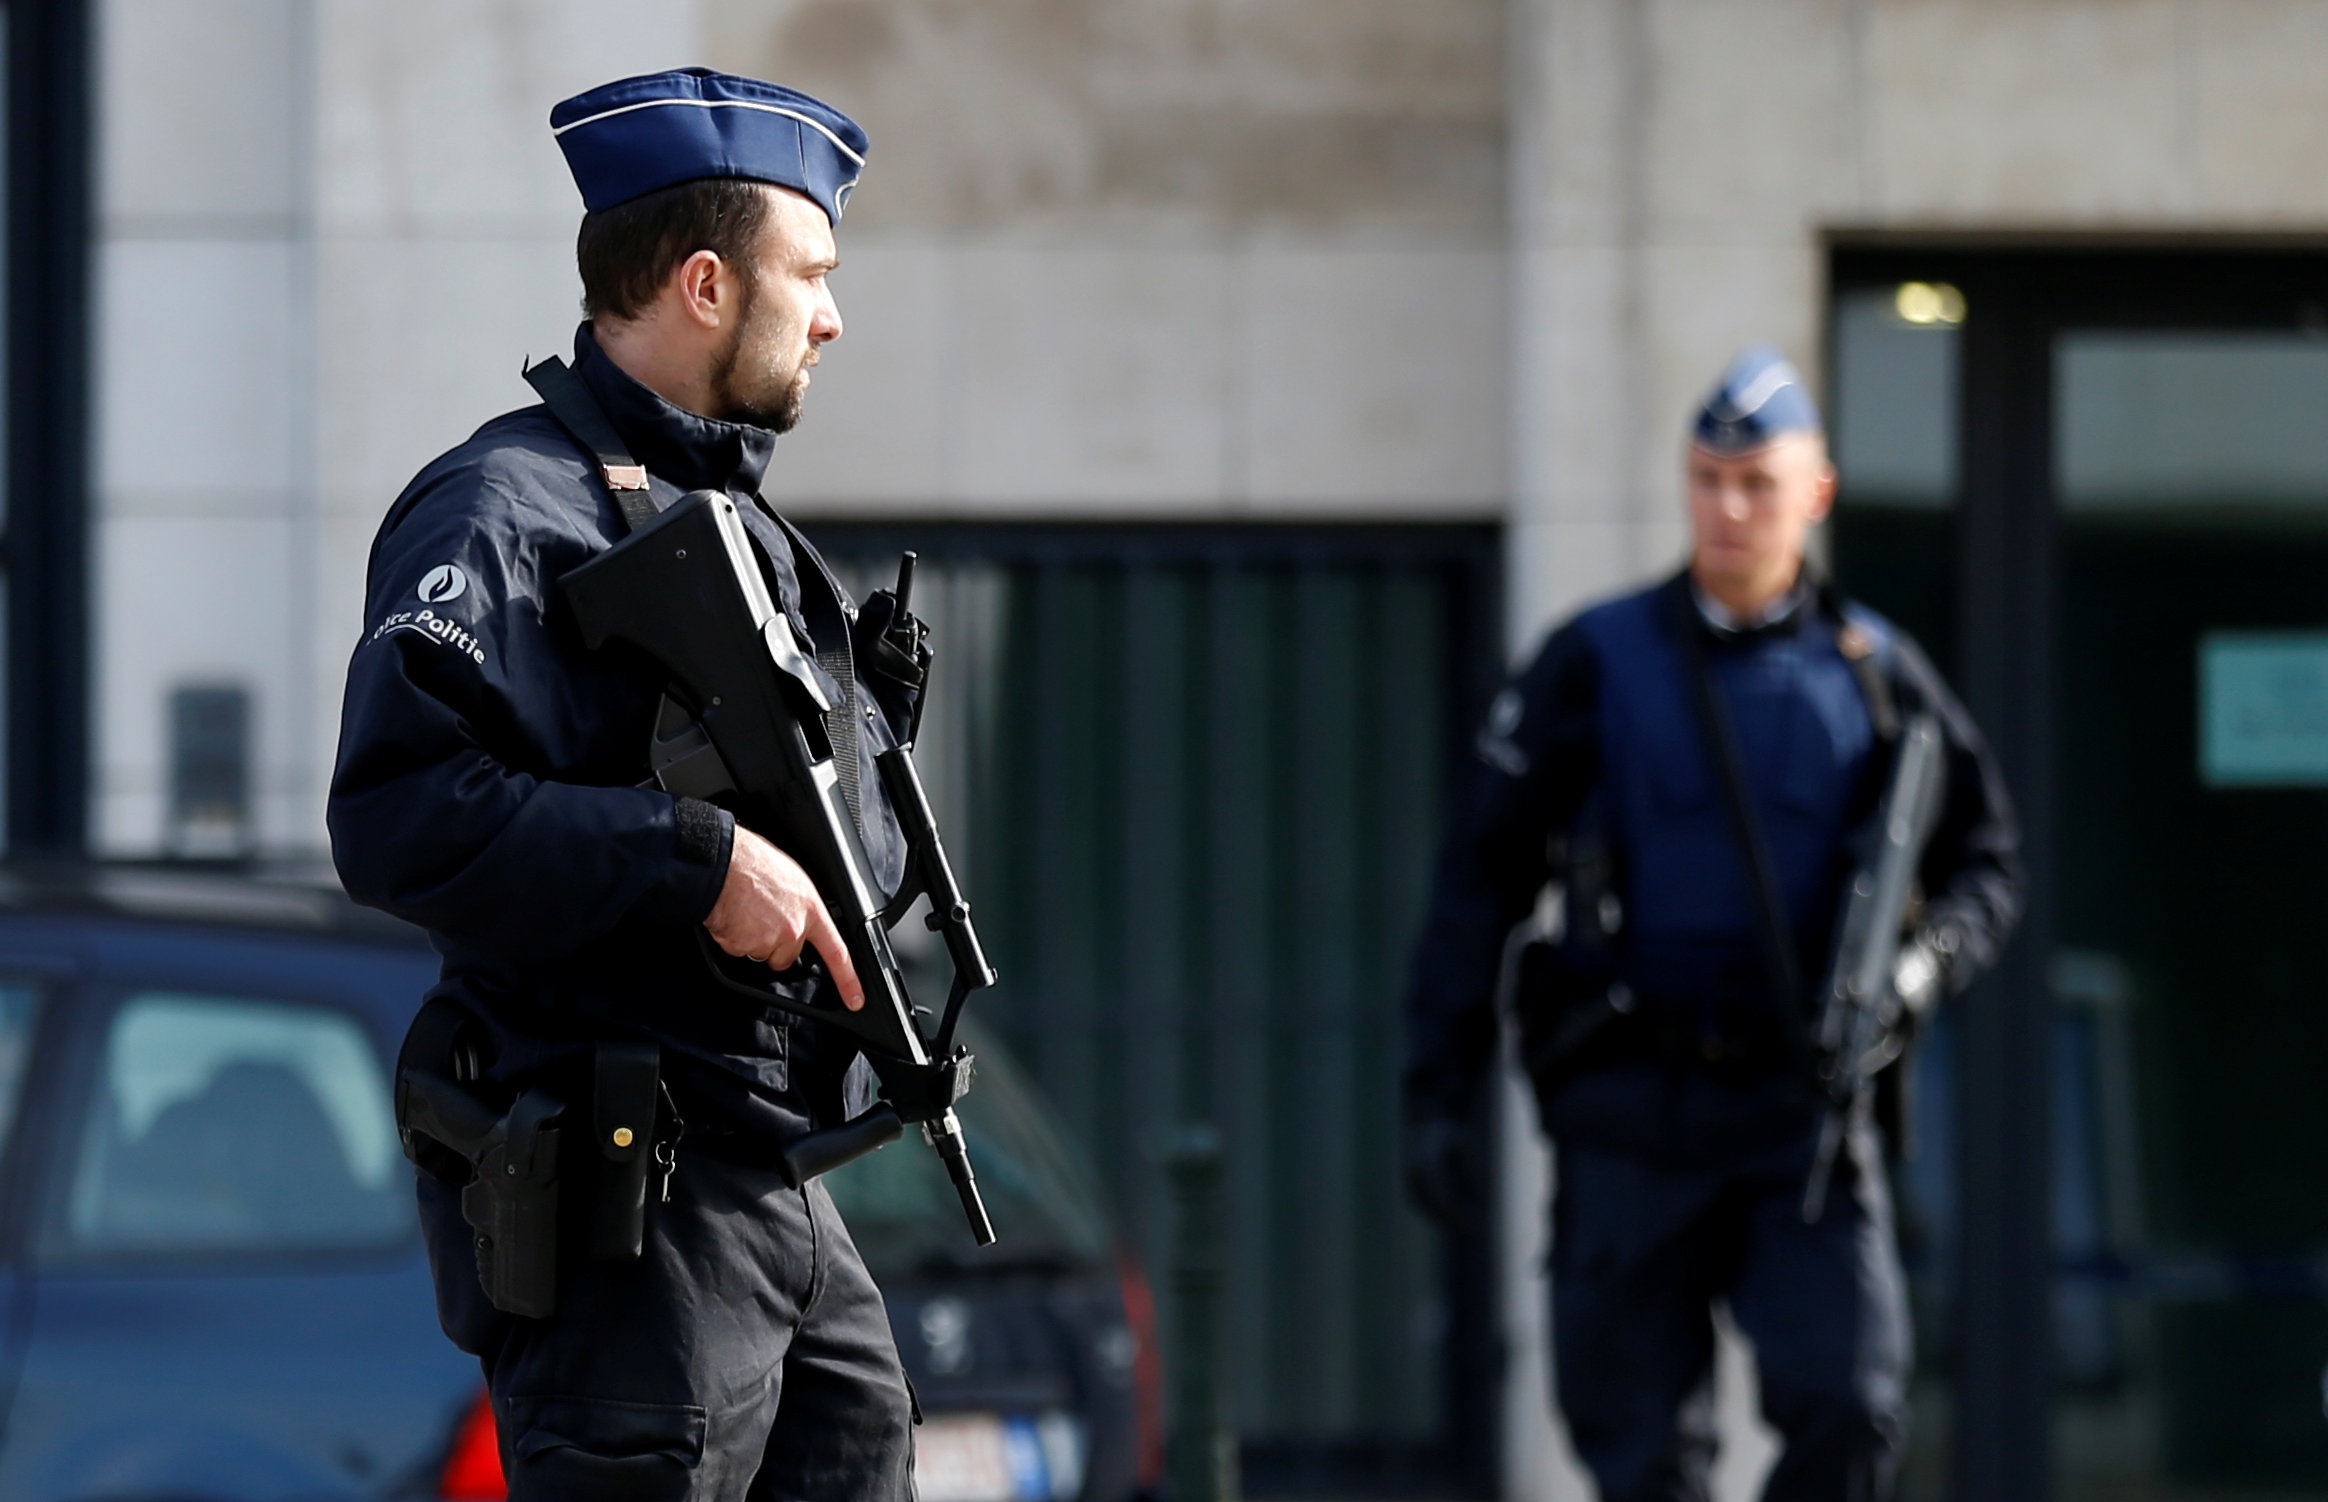 Βέλγιο: Εμπλοκή αστυνομικού σε συμμορία που ευθύνεται για 28 θανάτους